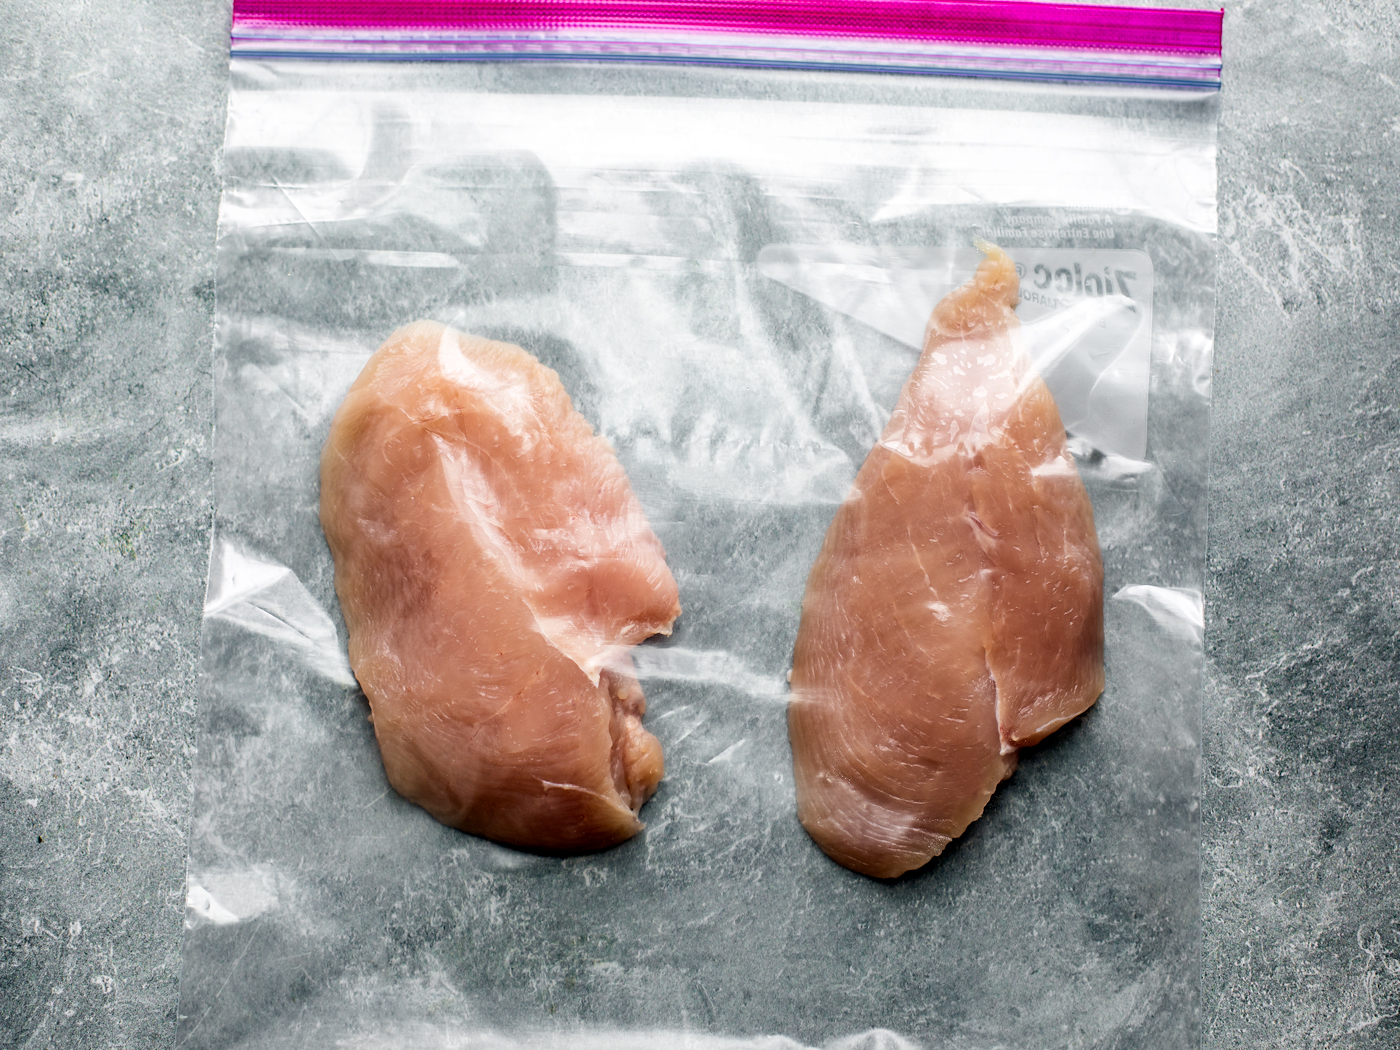 Raw chicken cutlets in freezer bag.